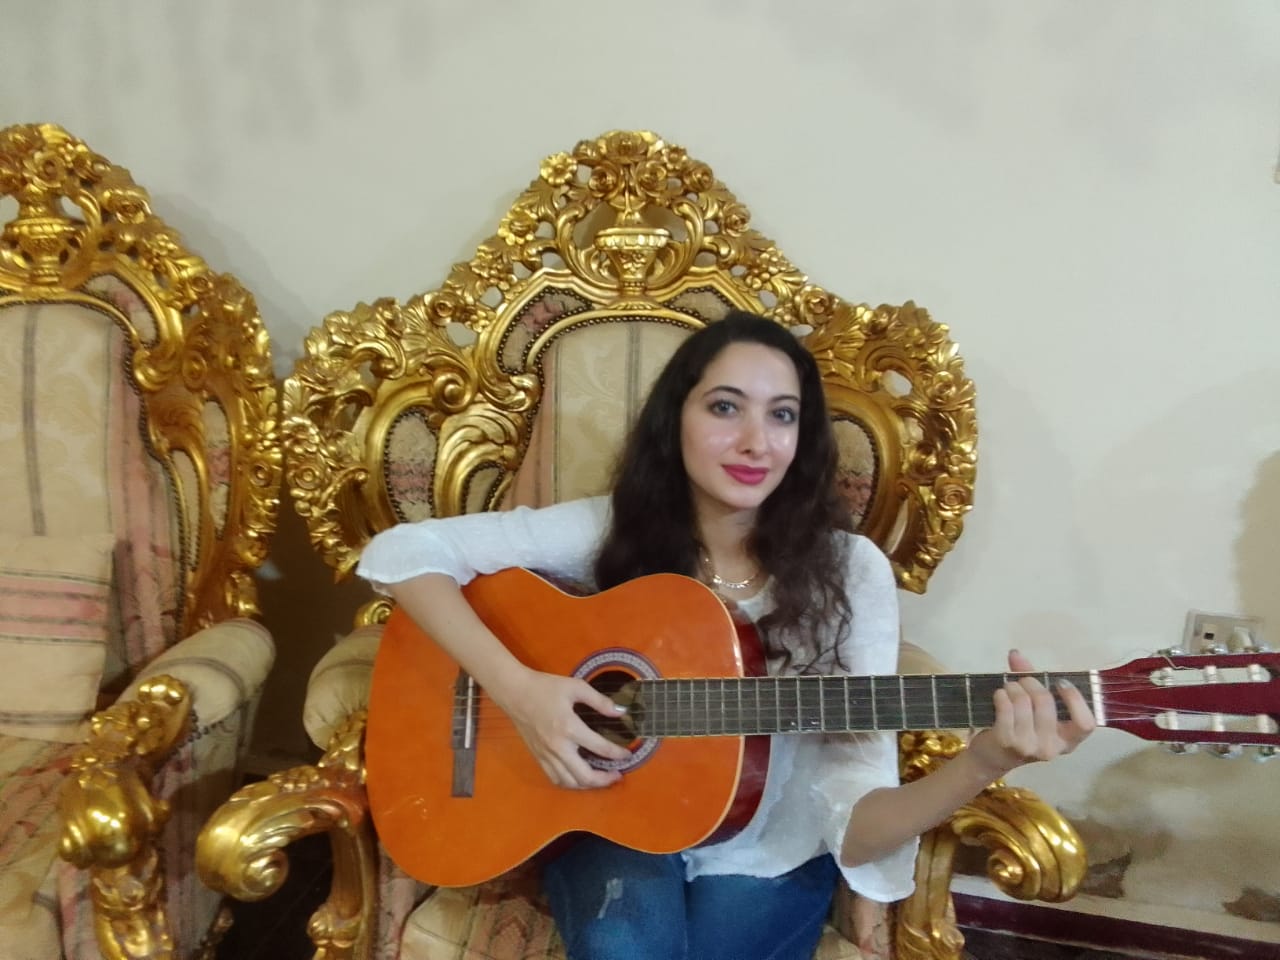 مريم موهبة الغناء الغربى في دمياط (1)